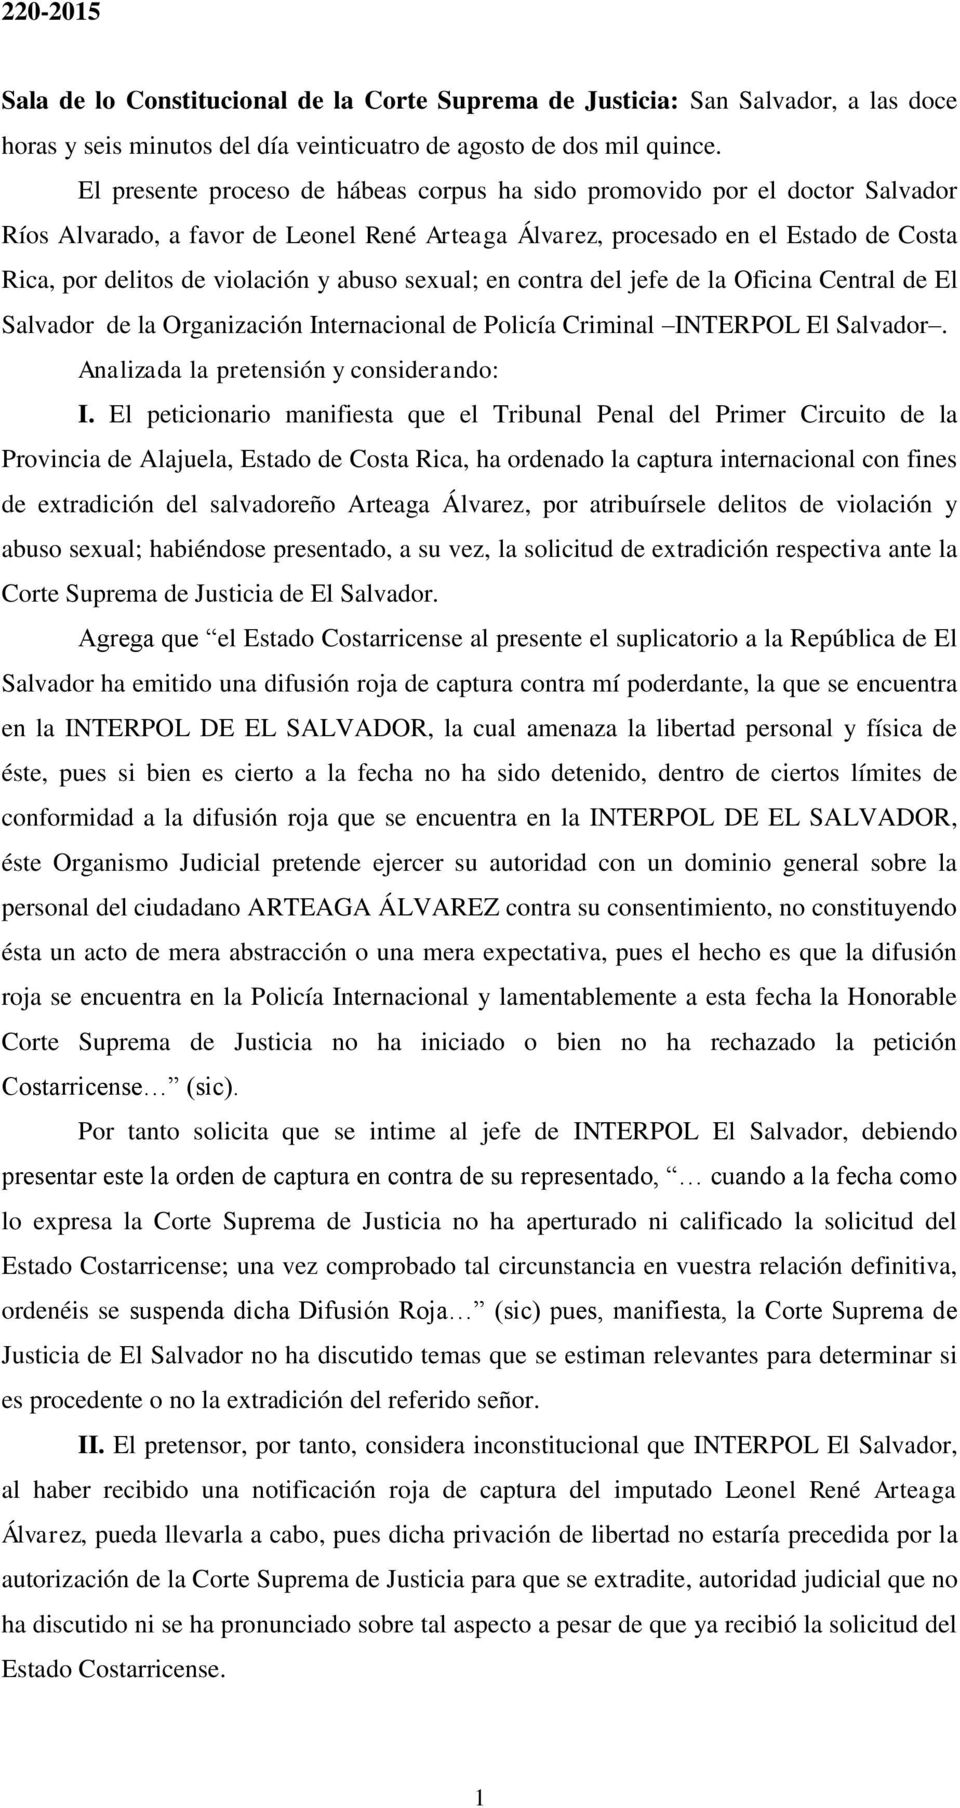 abuso sexual; en contra del jefe de la Oficina Central de El Salvador de la Organización Internacional de Policía Criminal INTERPOL El Salvador. Analizada la pretensión y considerando: I.